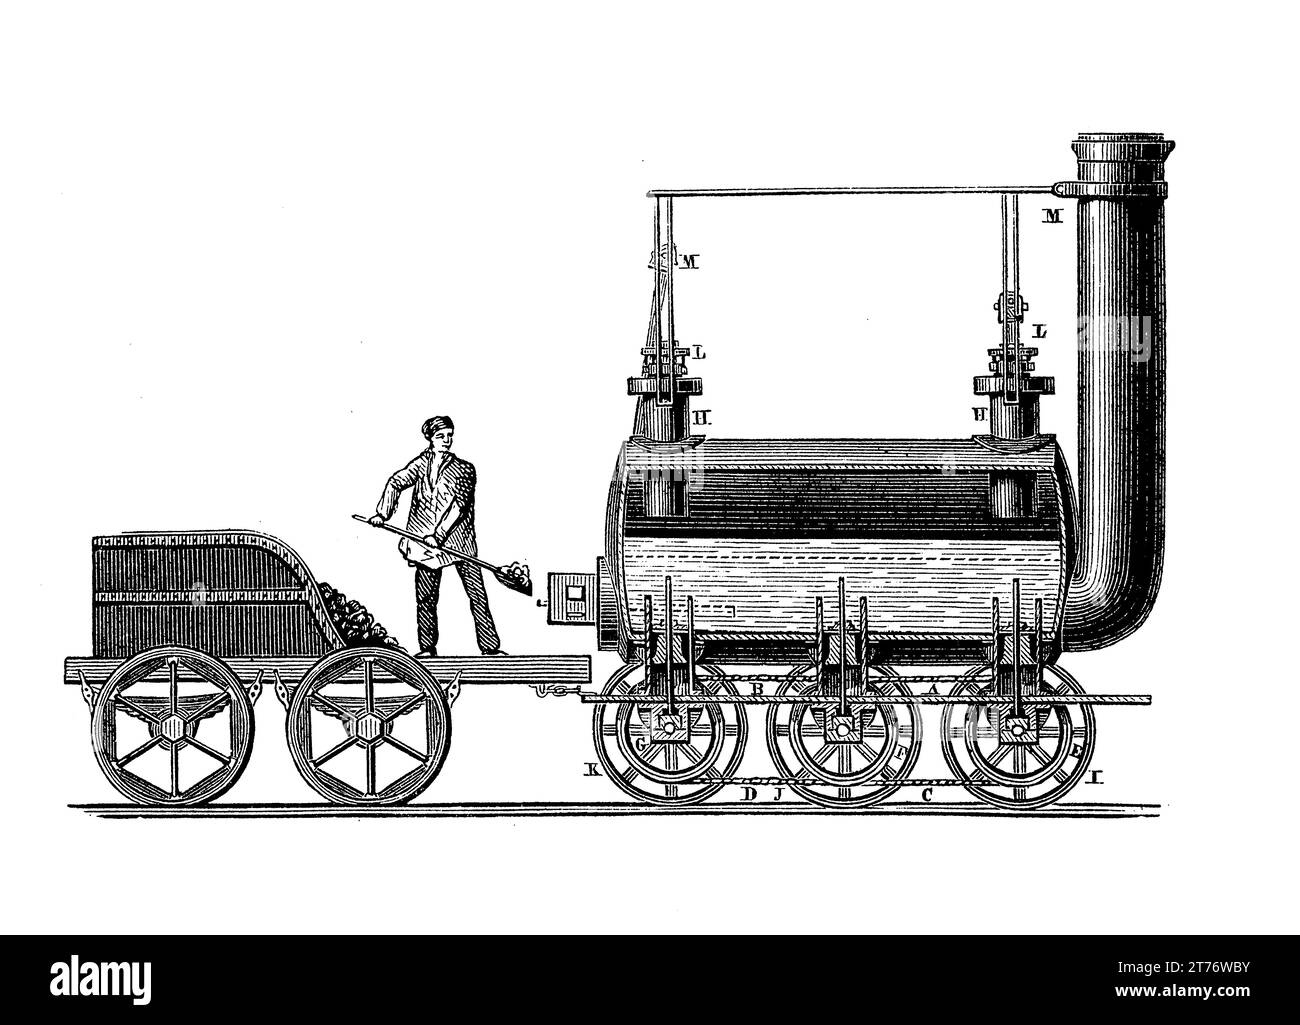 Bluecher (oft Blutcher genannt) Lokomotive, die 1814 von George Stephenson gebaut wurde, die erste einer Reihe von Dampflokomotiven Stockfoto